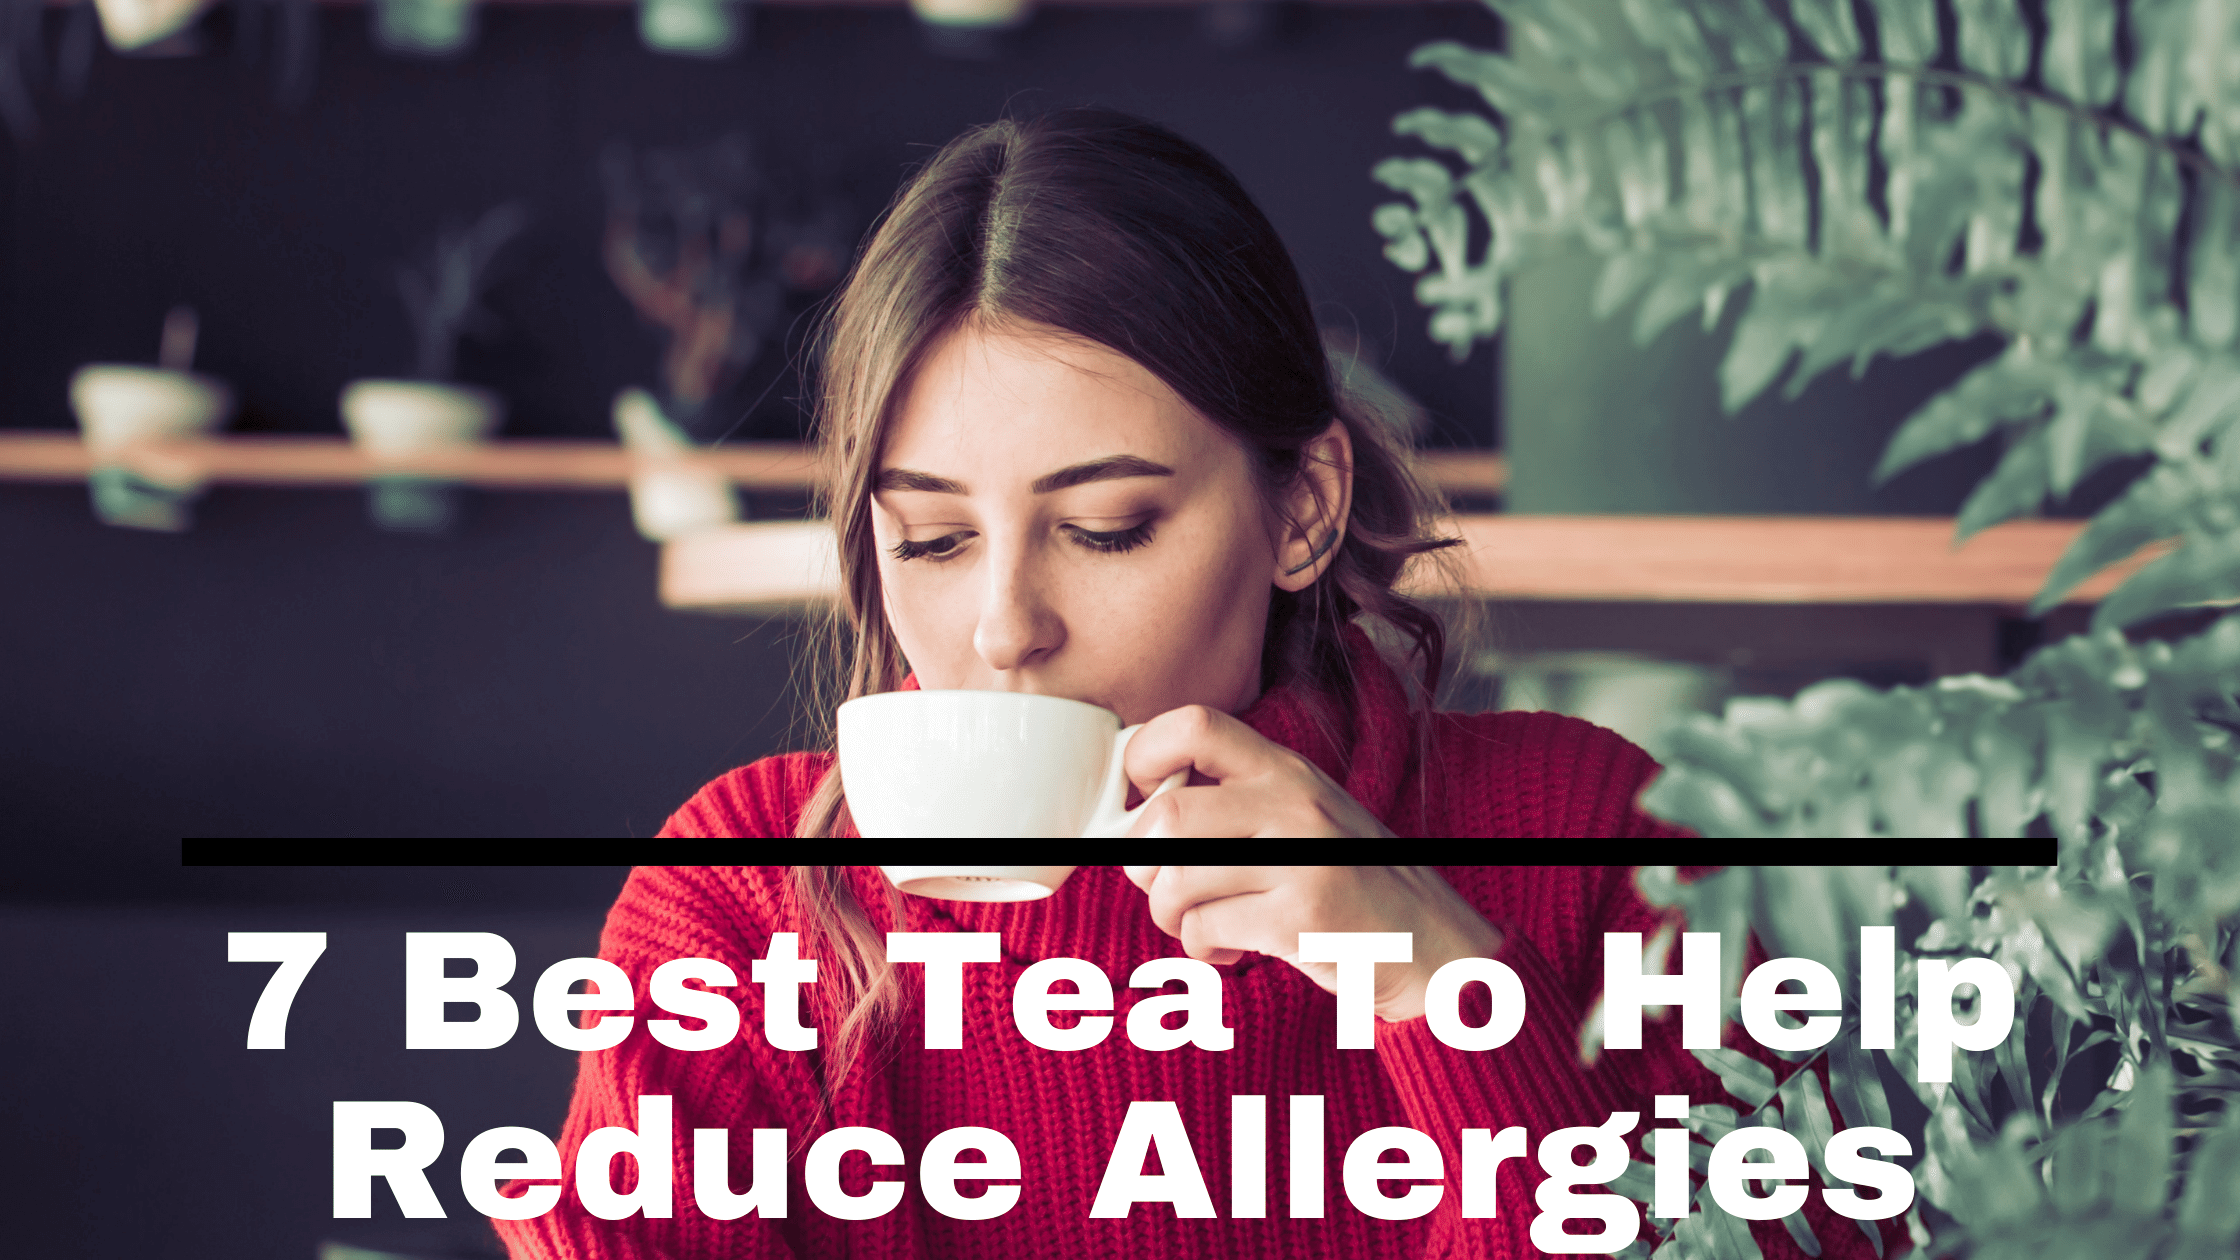 tea to help reduce allergies